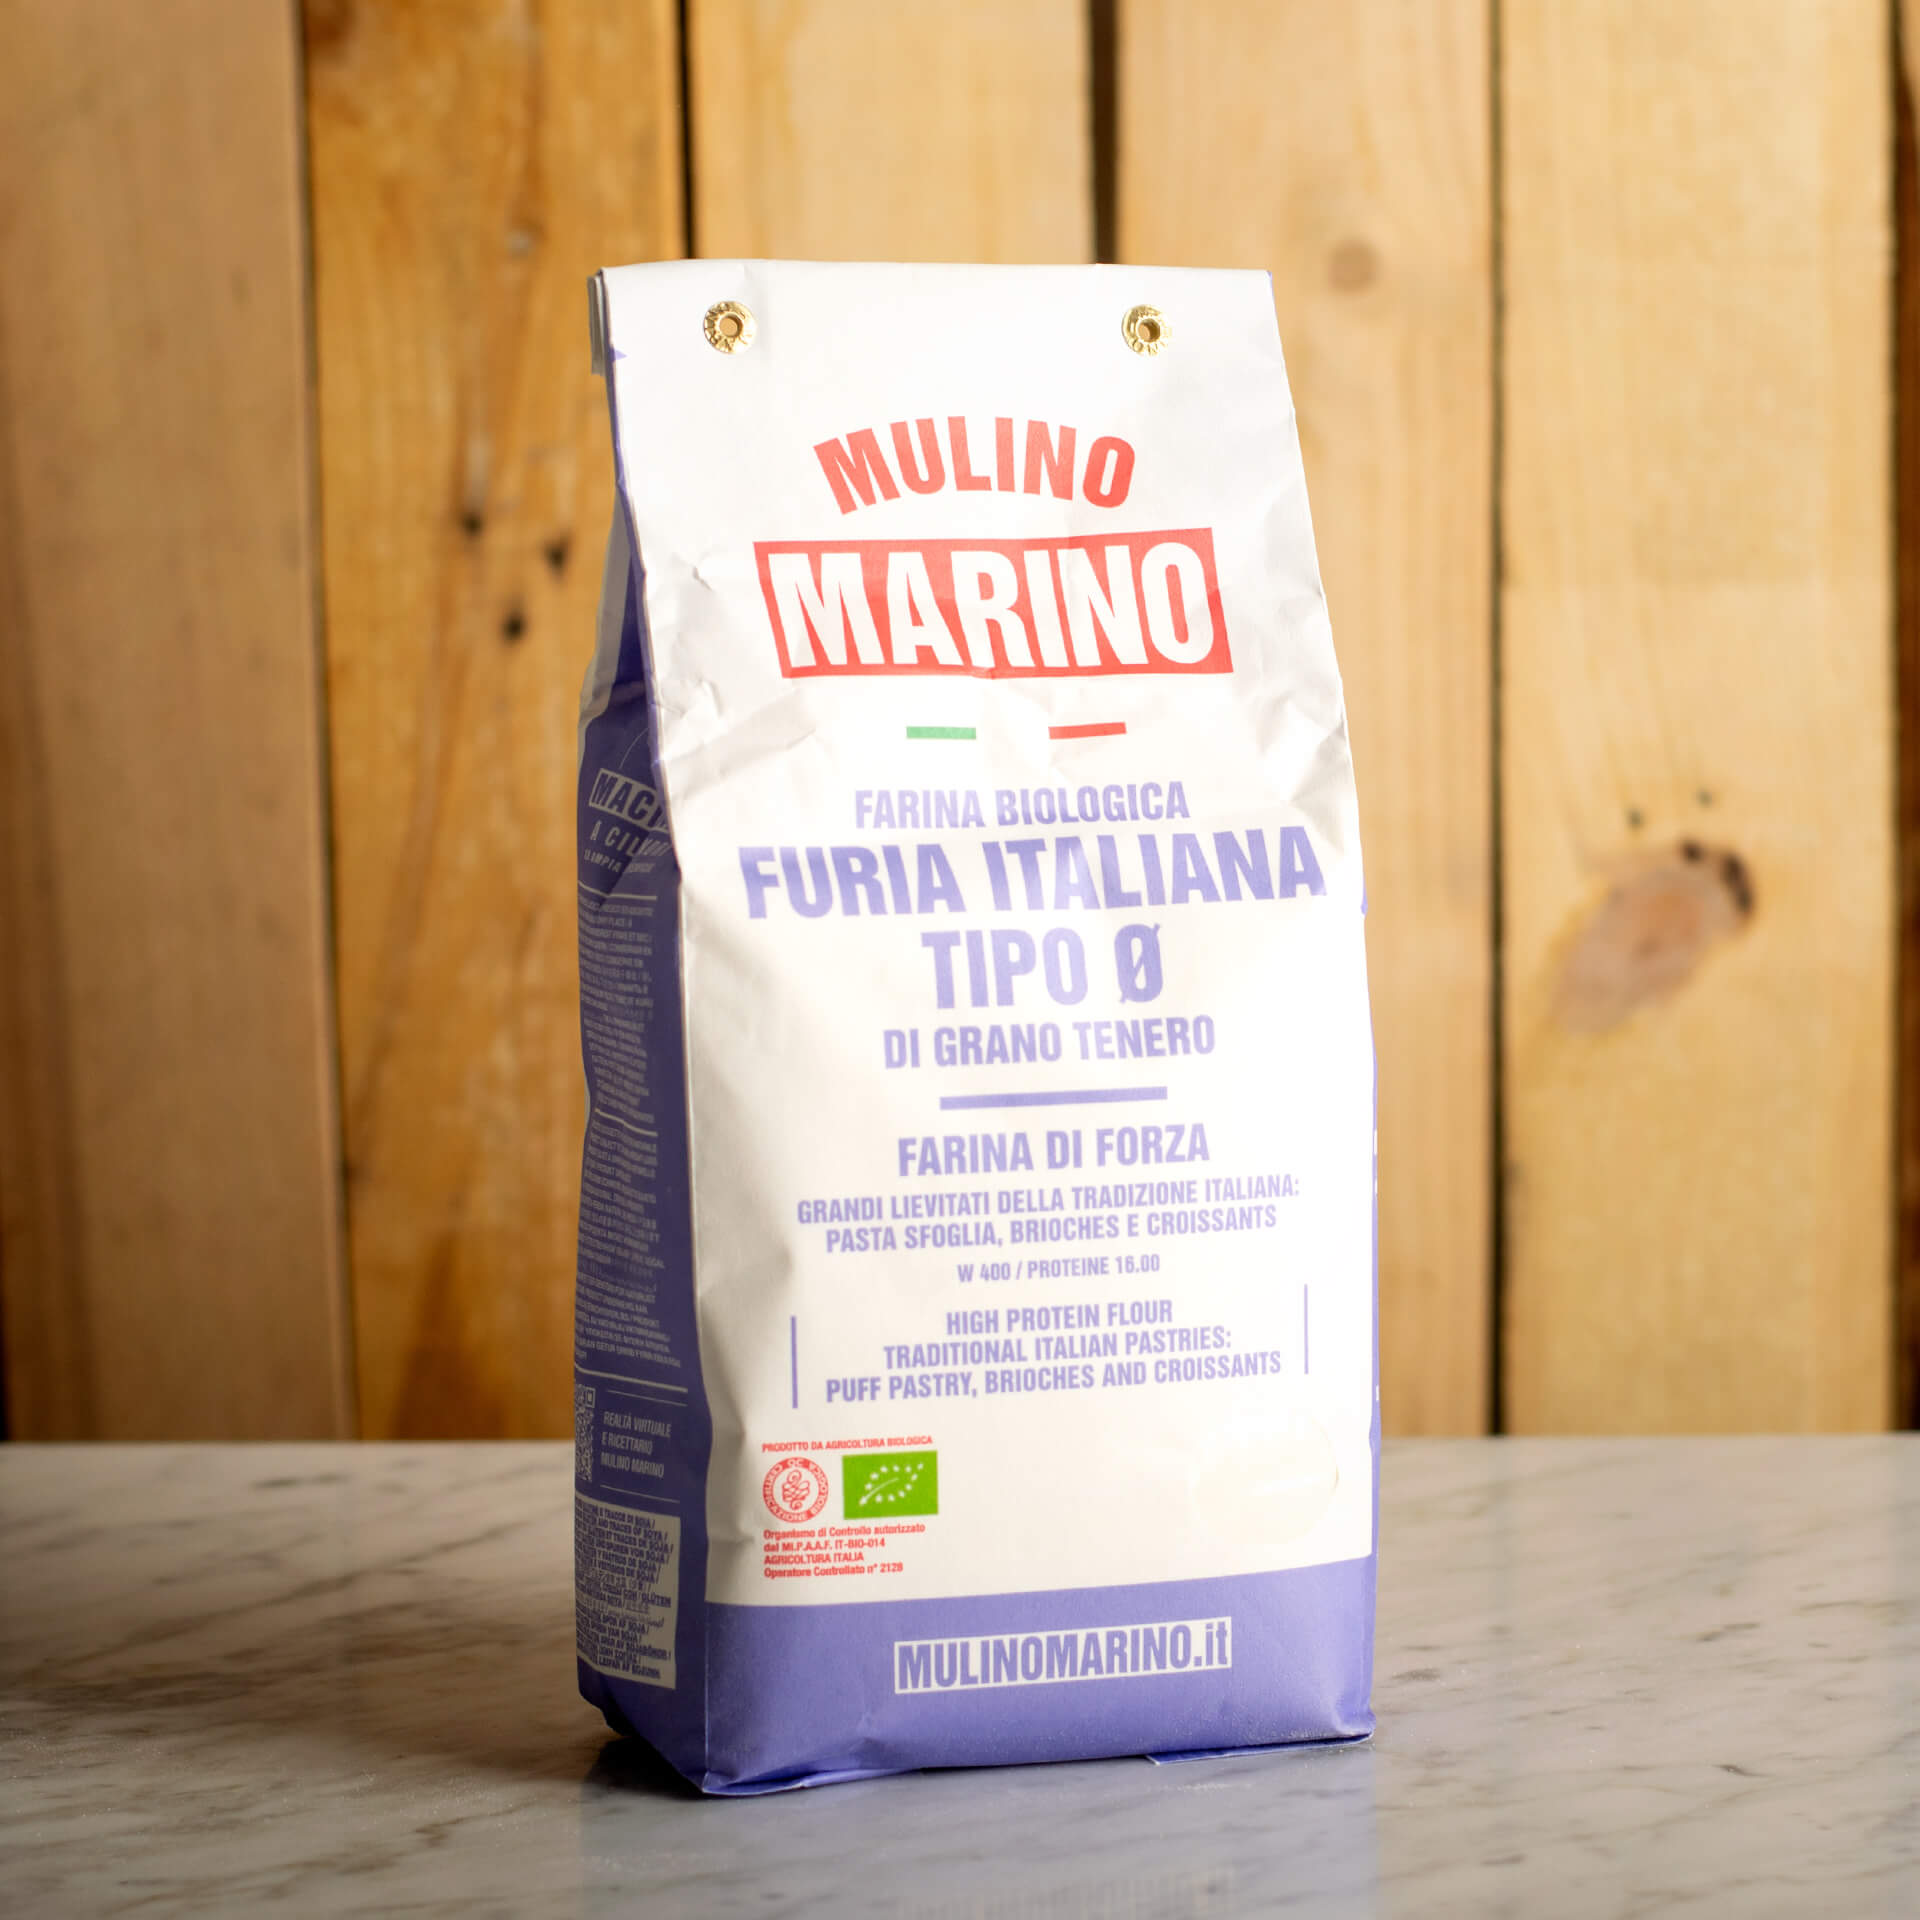 Organic "Furia Italiana" Flour 5kg